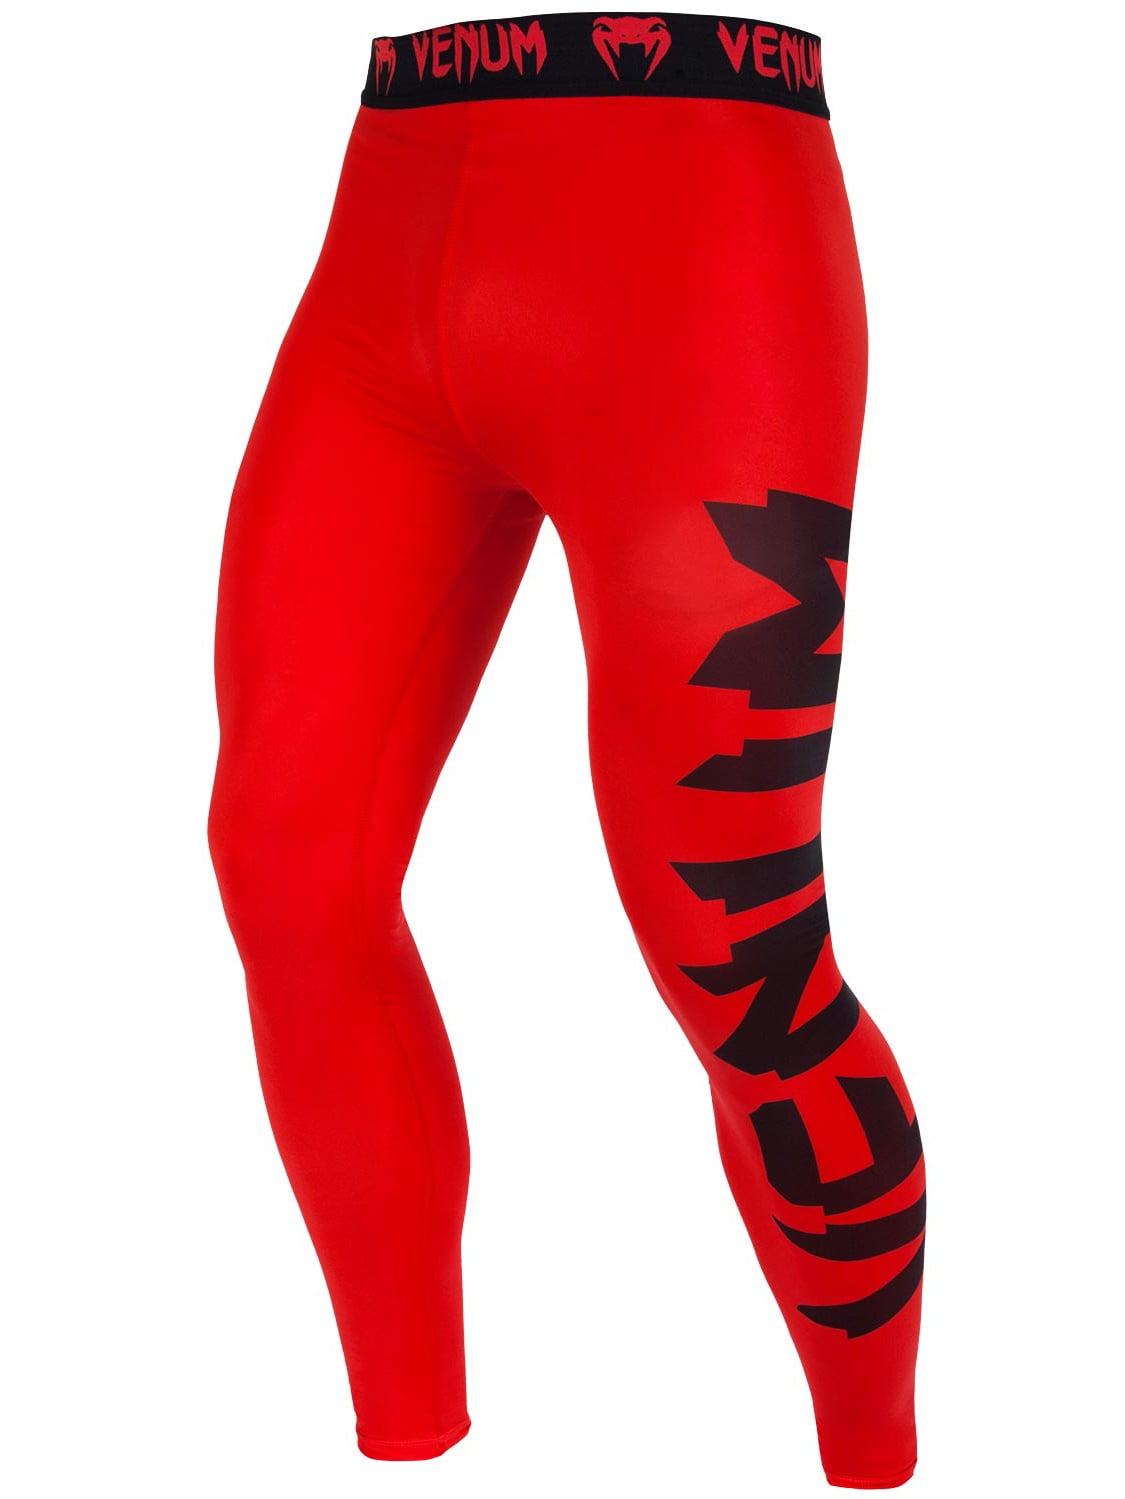 Venum Men's Giant Compression Pants Spats Red - Walmart.com